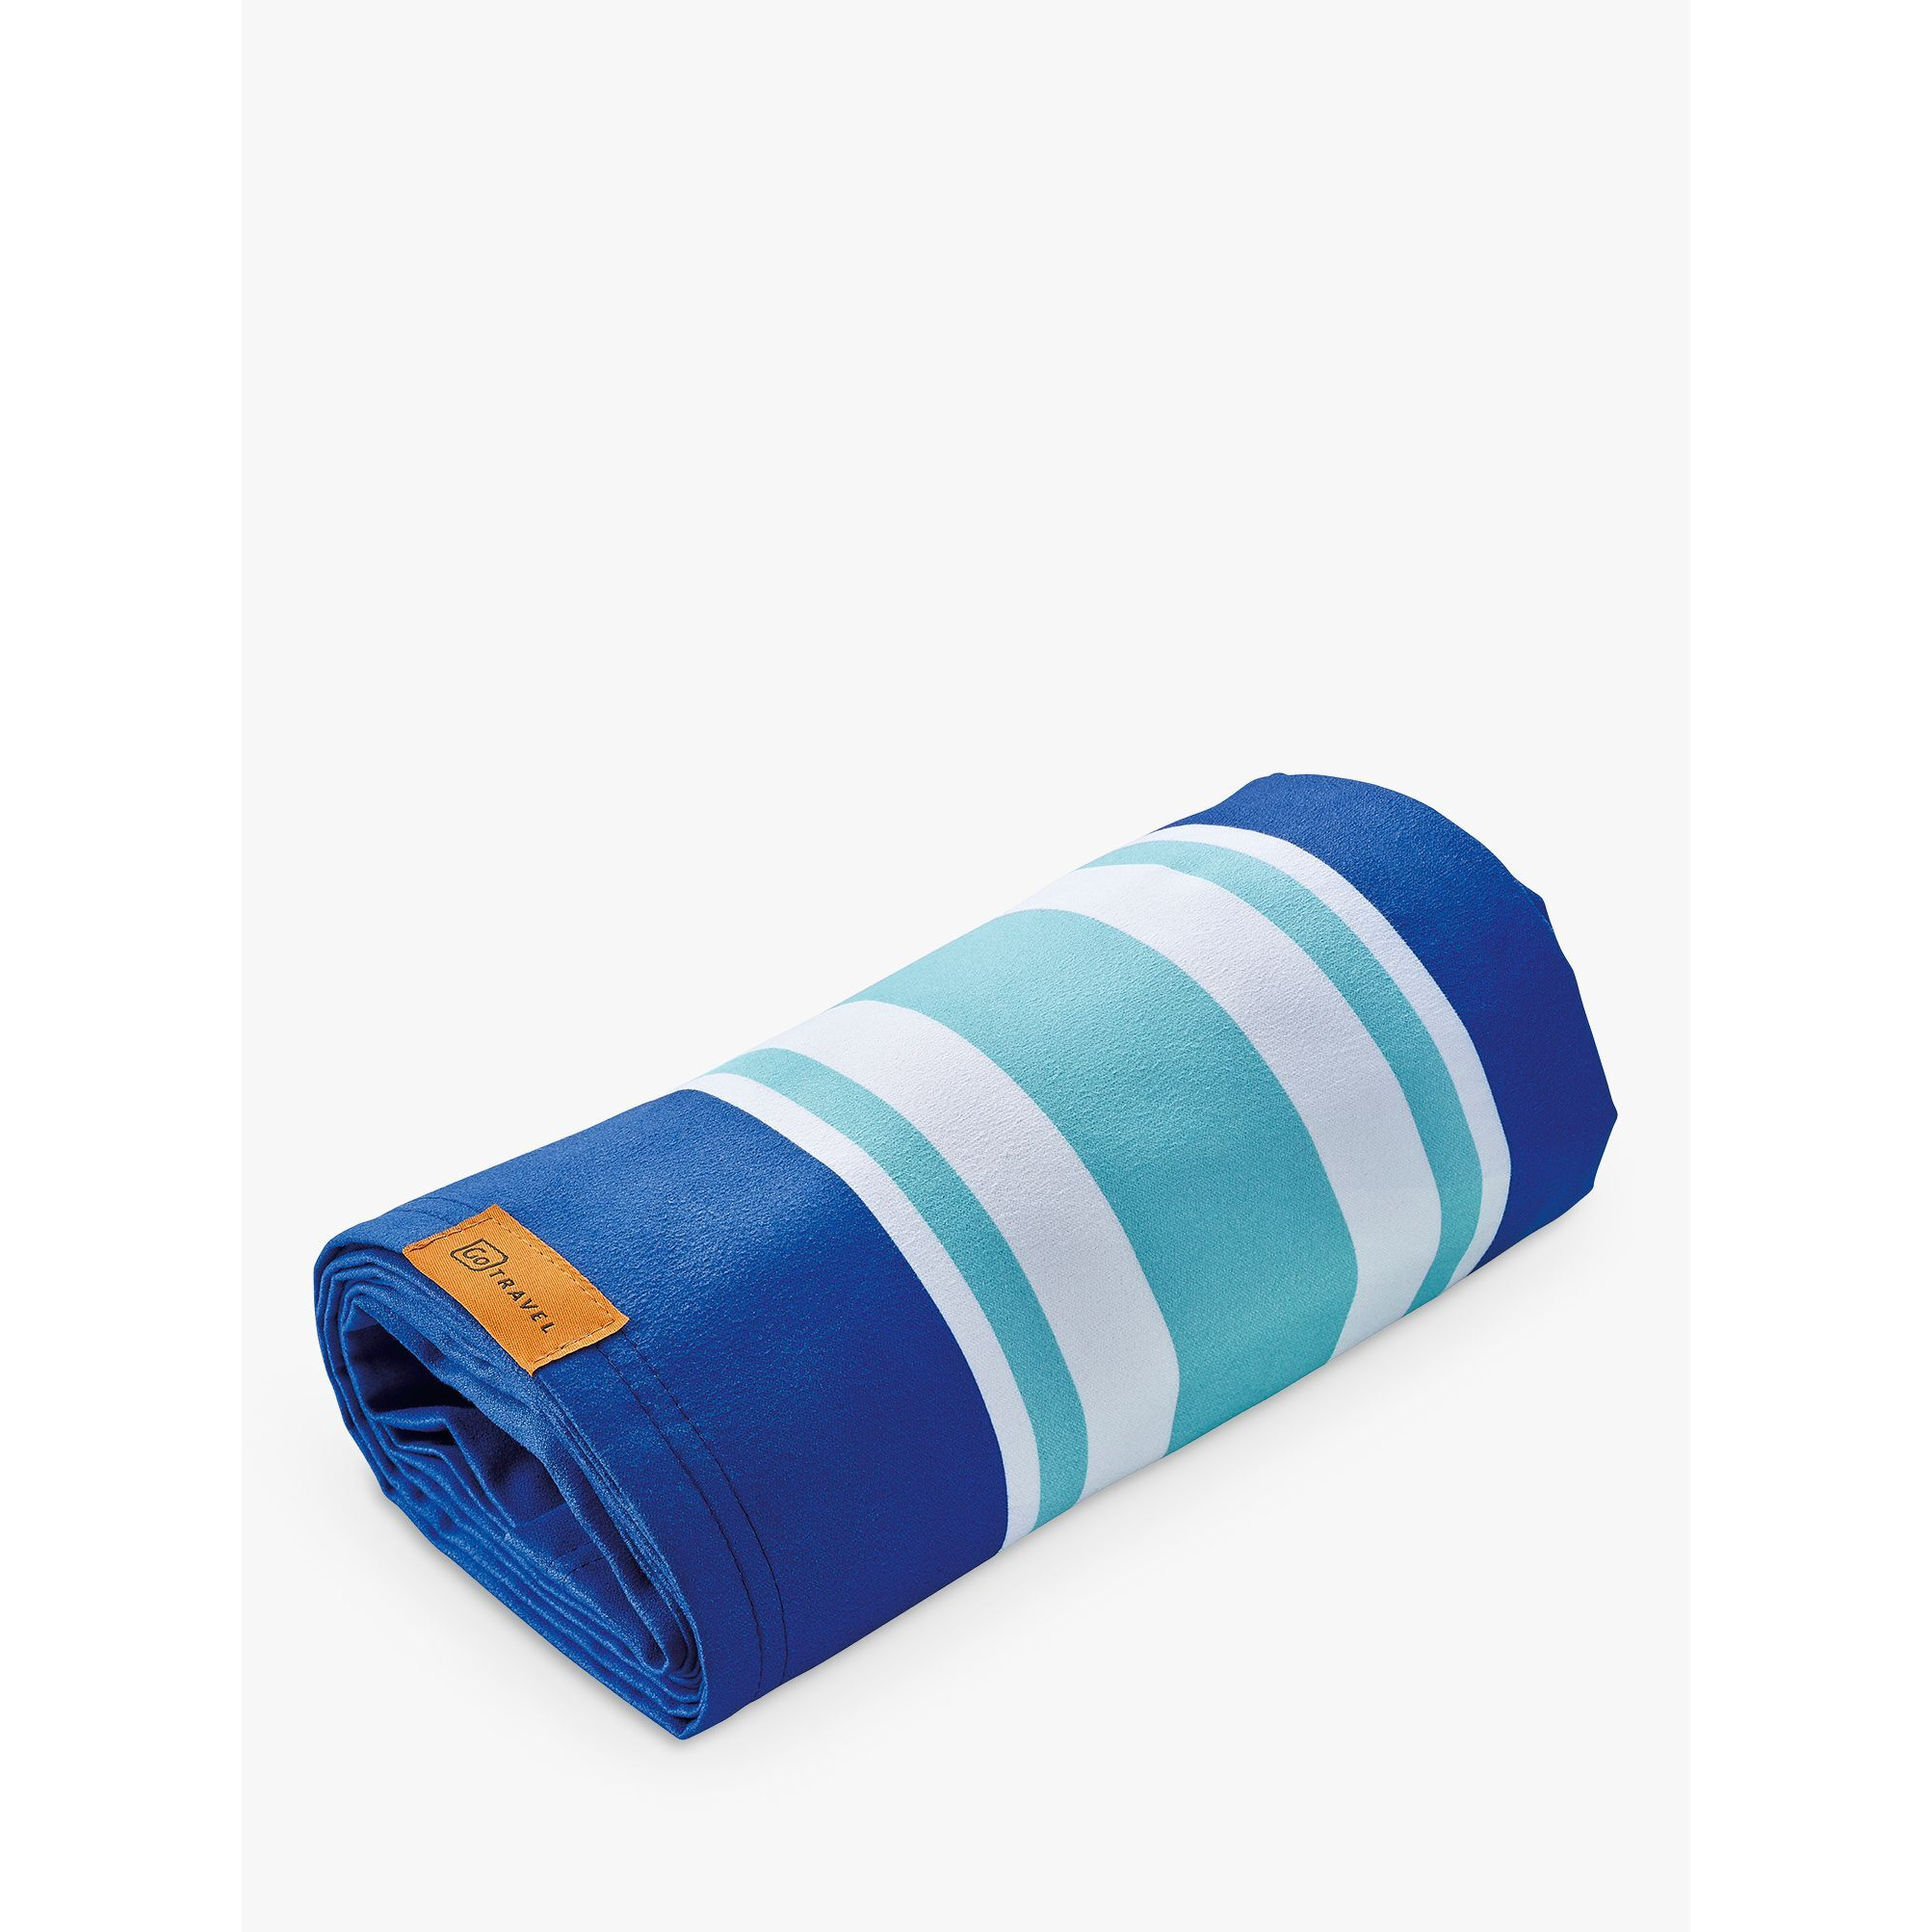 Go Travel 260 Beach Towel, Blue - image 1